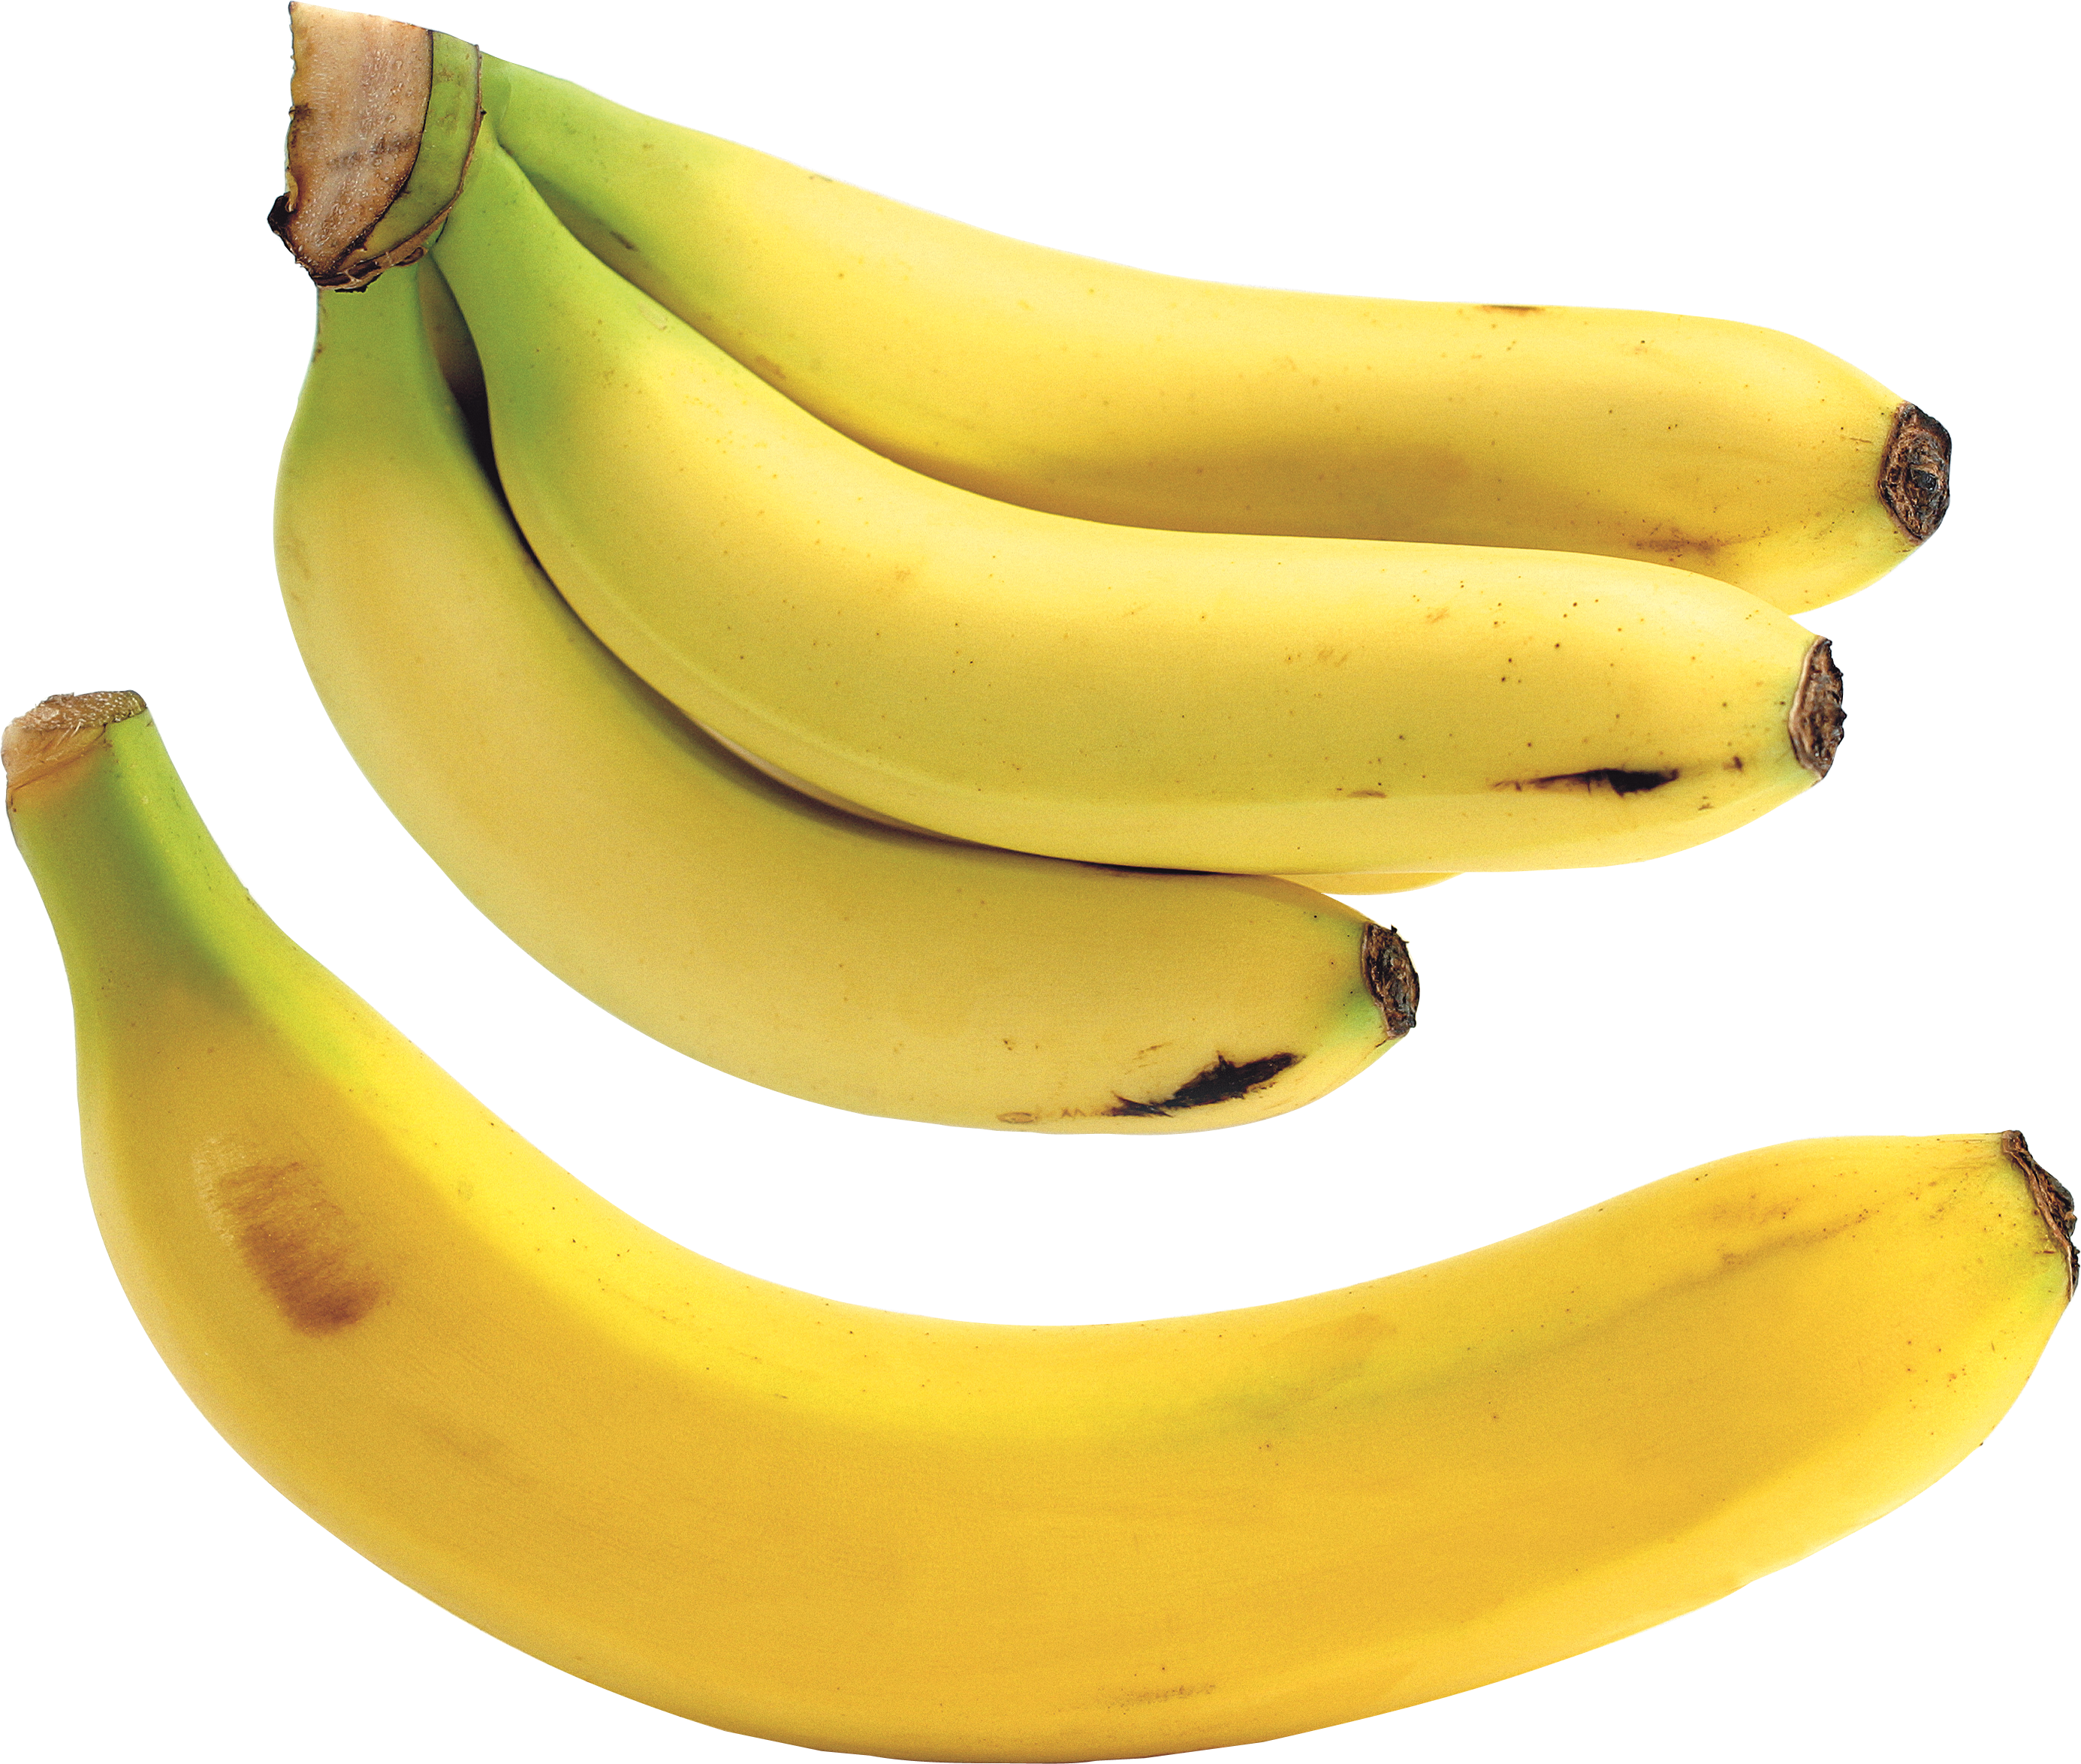 Immagine di banana